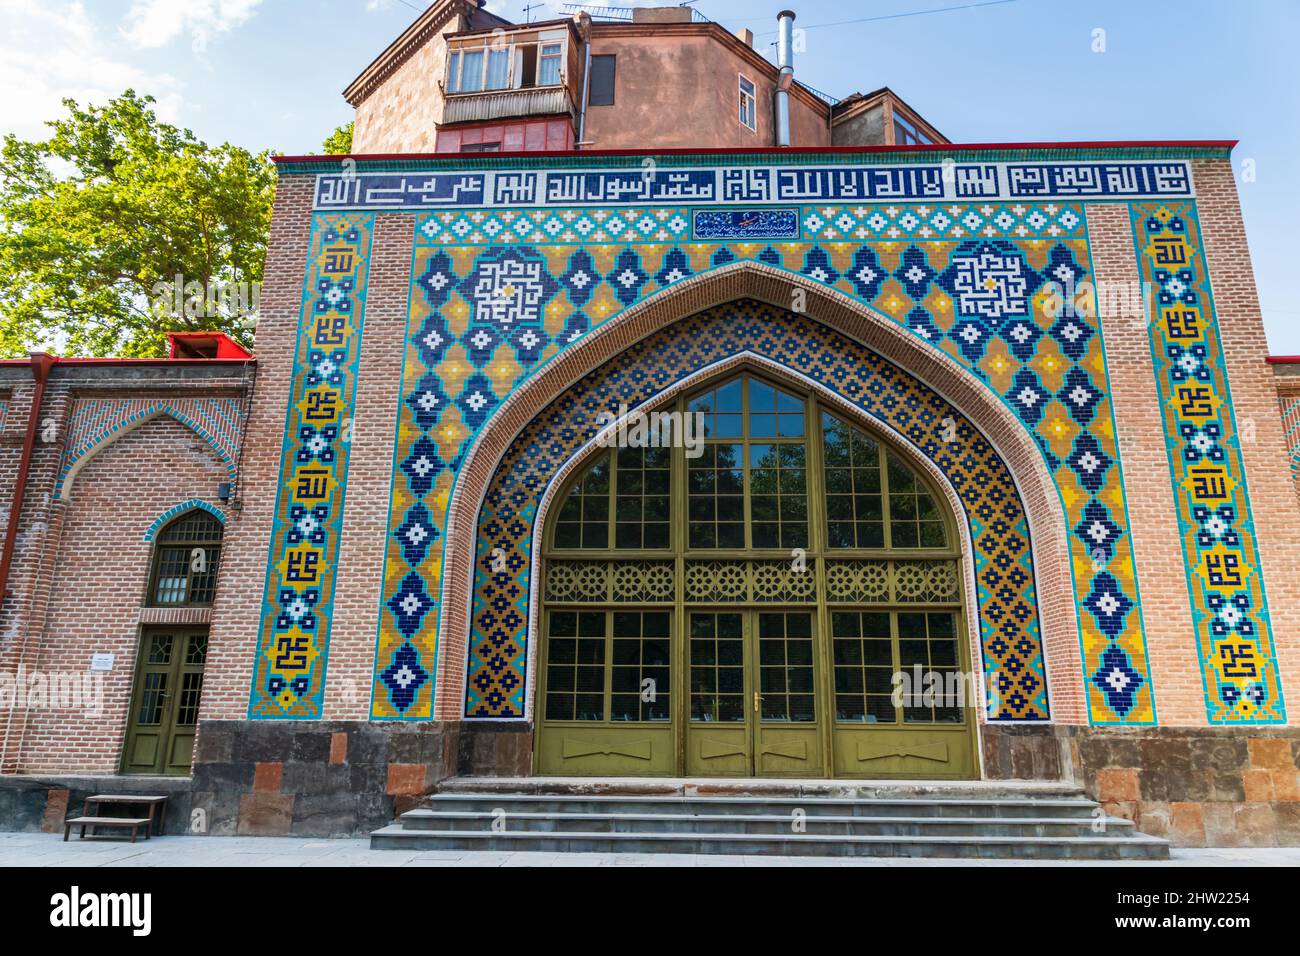 Blaue Moschee in Jerewan, die größte und einzige aktive Moschee in Armenien. Es liegt in der Innenstadt von Eriwan und ist ein beliebtes Touristenziel. Stockfoto